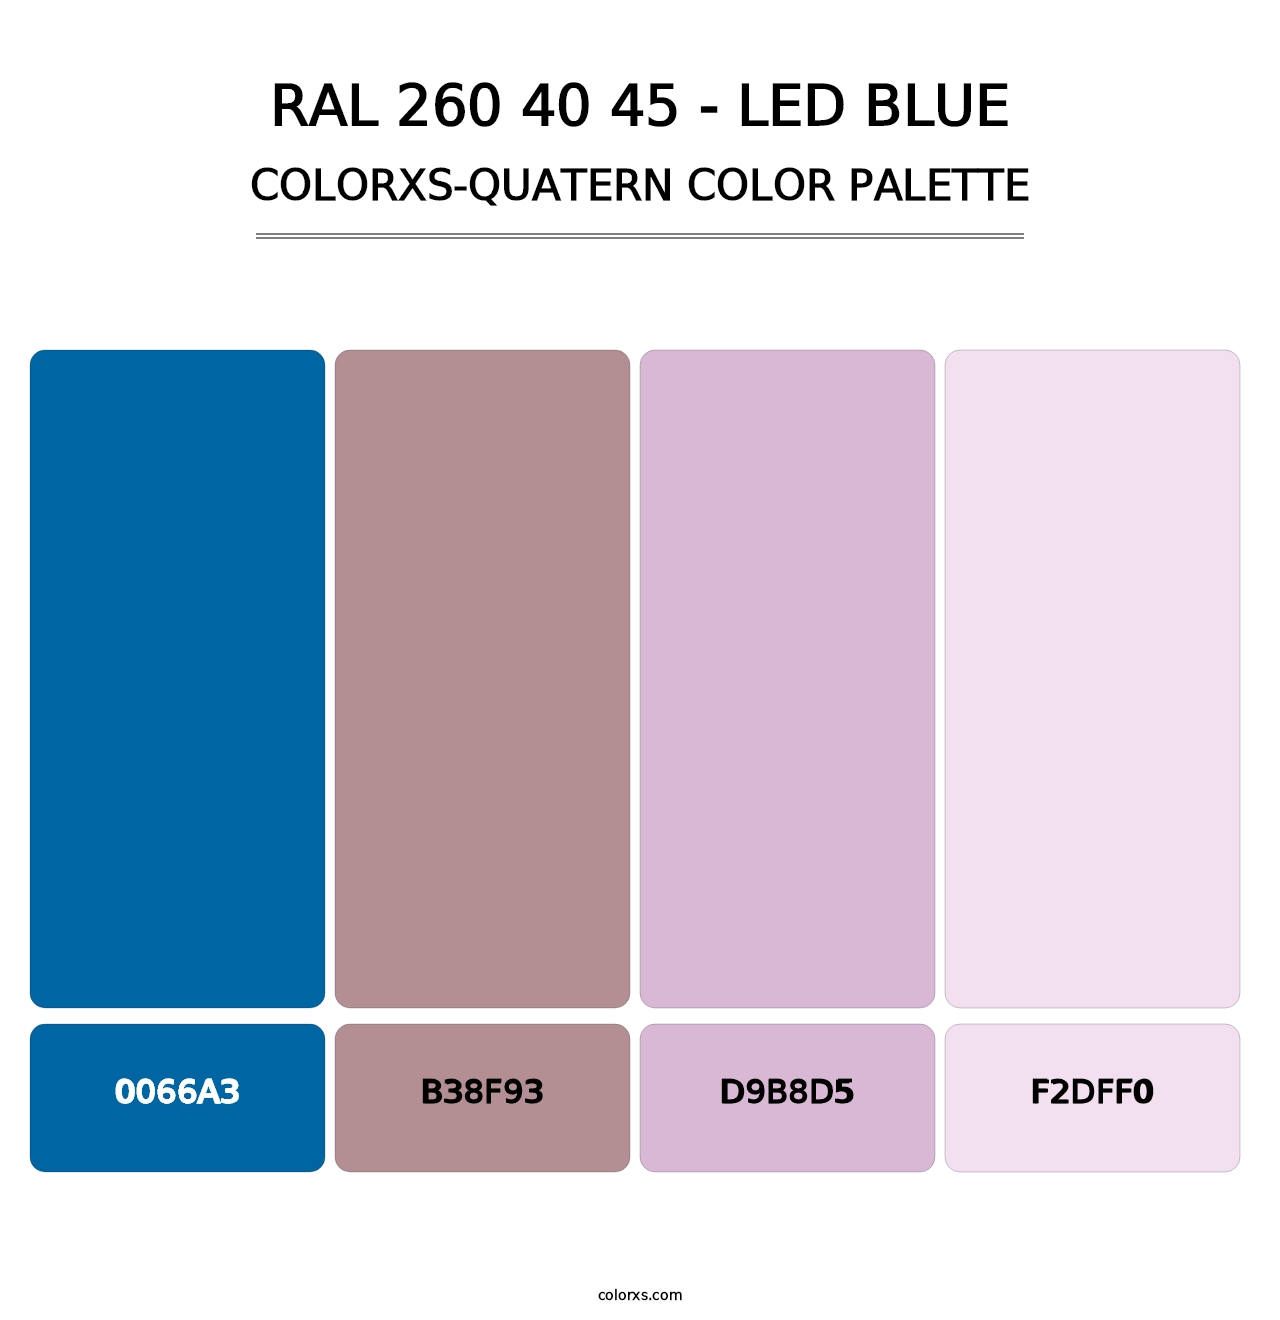 RAL 260 40 45 - LED Blue - Colorxs Quatern Palette